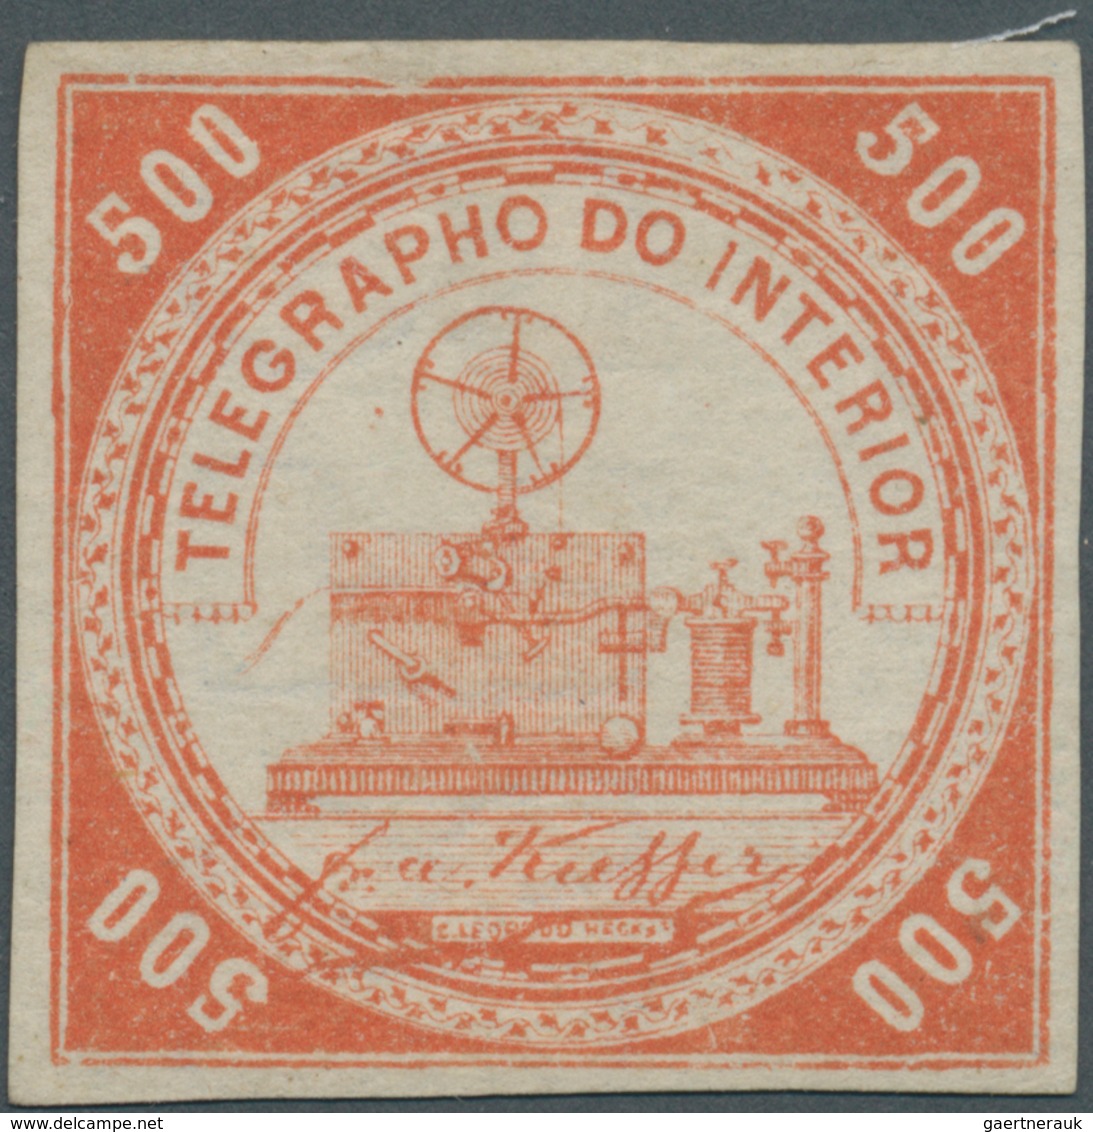 00587 Brasilien - Telegrafenmarken: 1873, 500r. Vermilion, Wm "Lacroix Freres", Fresh Colour, Full Margins - Télégraphes